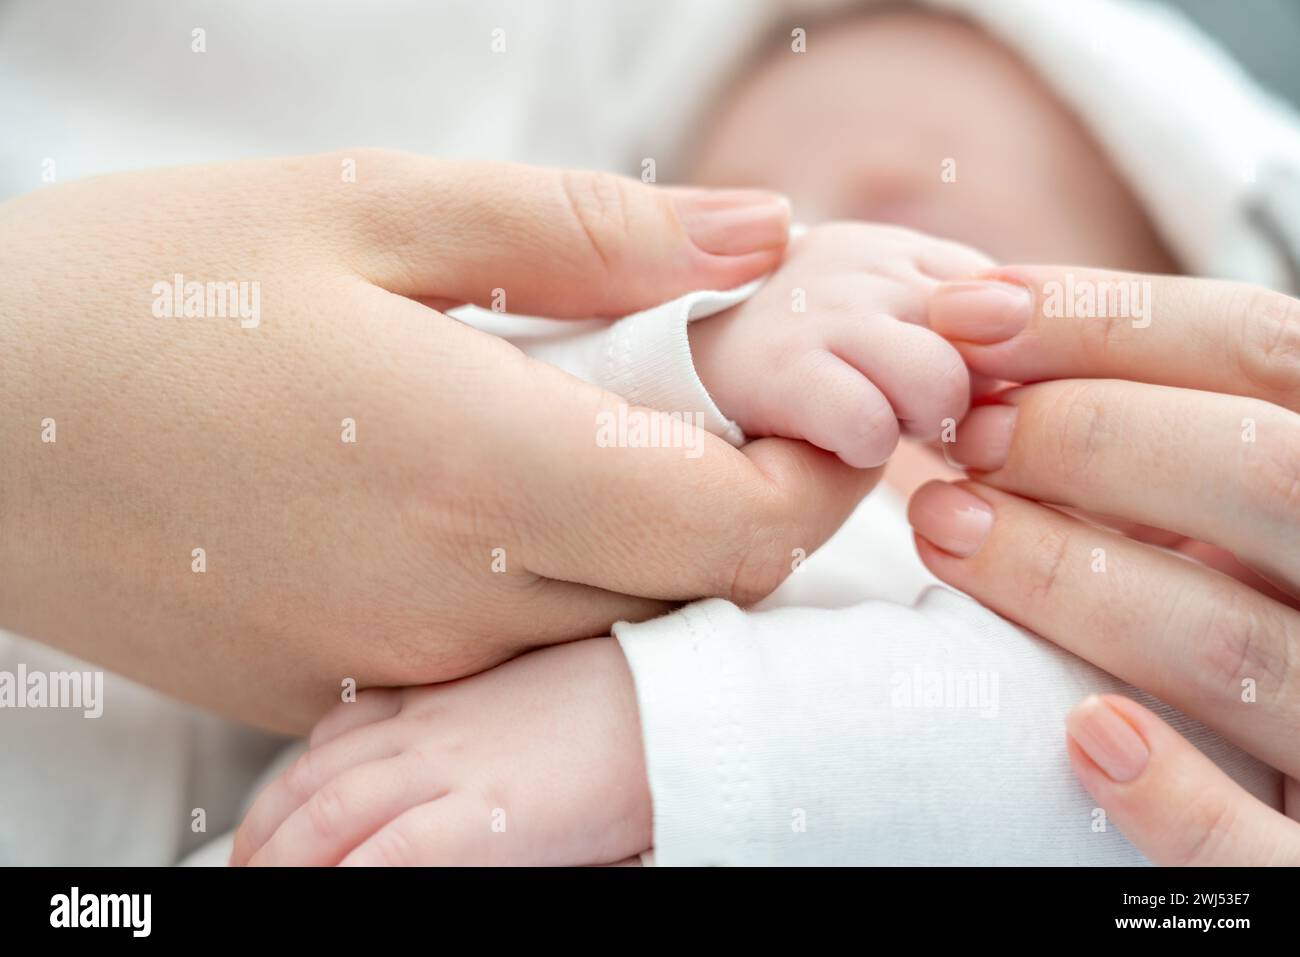 Die beruhigende Berührung der Mutter beruhigt ein krankes Neugeborenes. Das Konzept der Heilkraft der mütterlichen Bindung Stockfoto